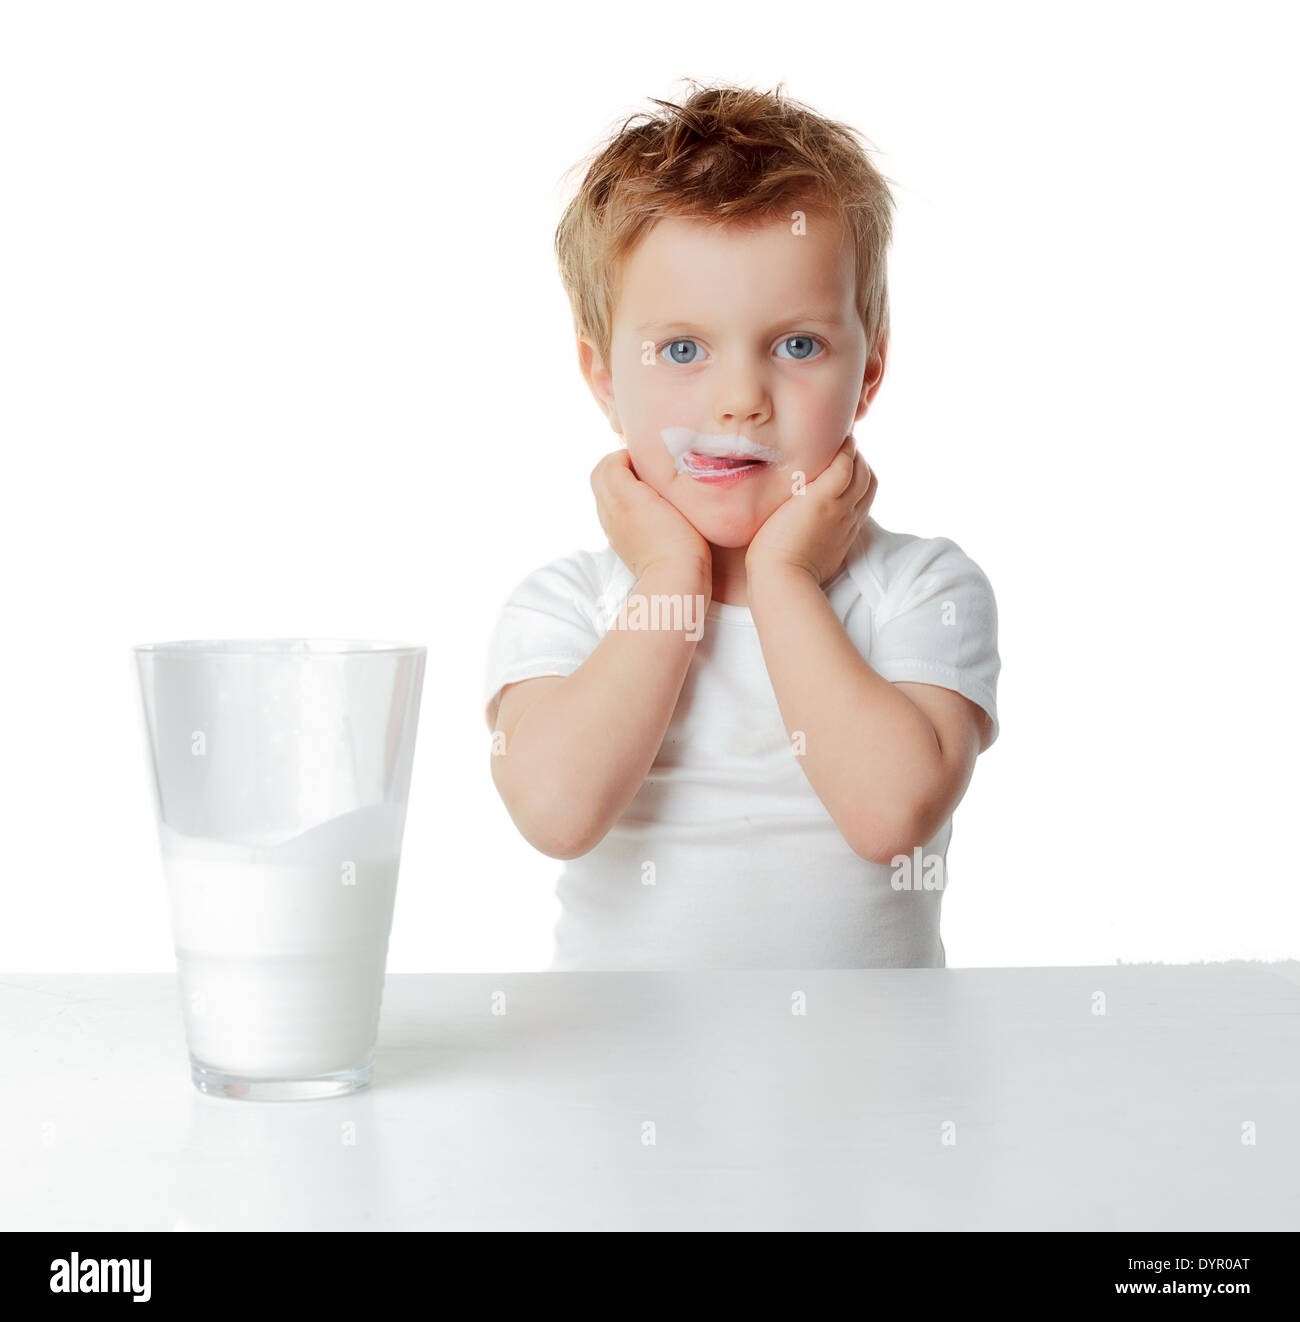 Child drinking milk Stock Photo